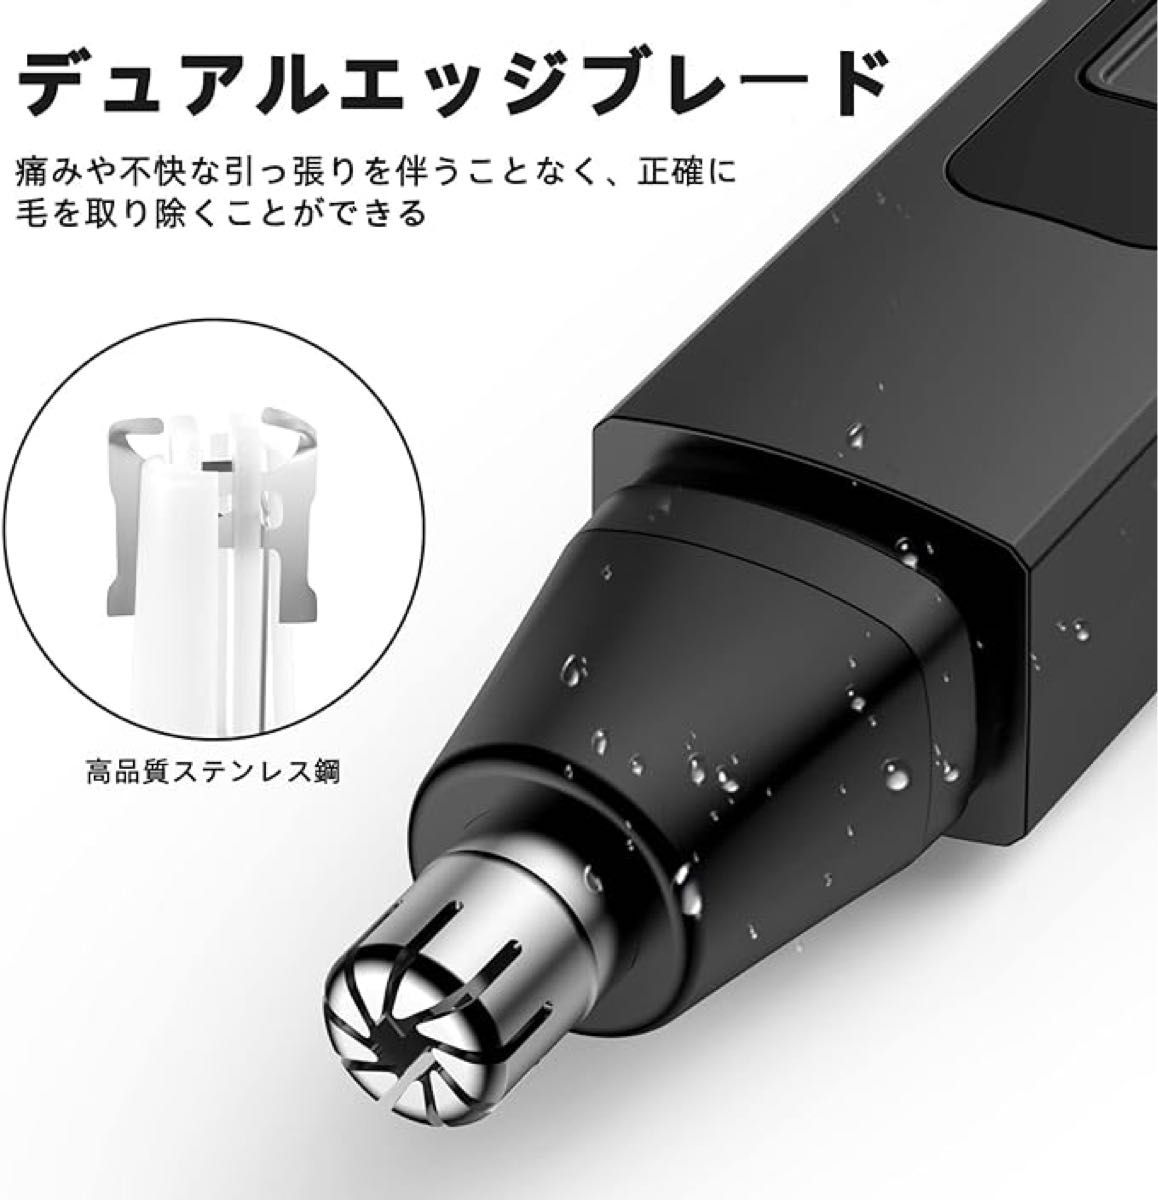 鼻毛カッター メンズ エチケットカッター USB type-c 充電式 低騒音 人気 防水 耳毛カッター 電動 女性 鼻毛トリマー